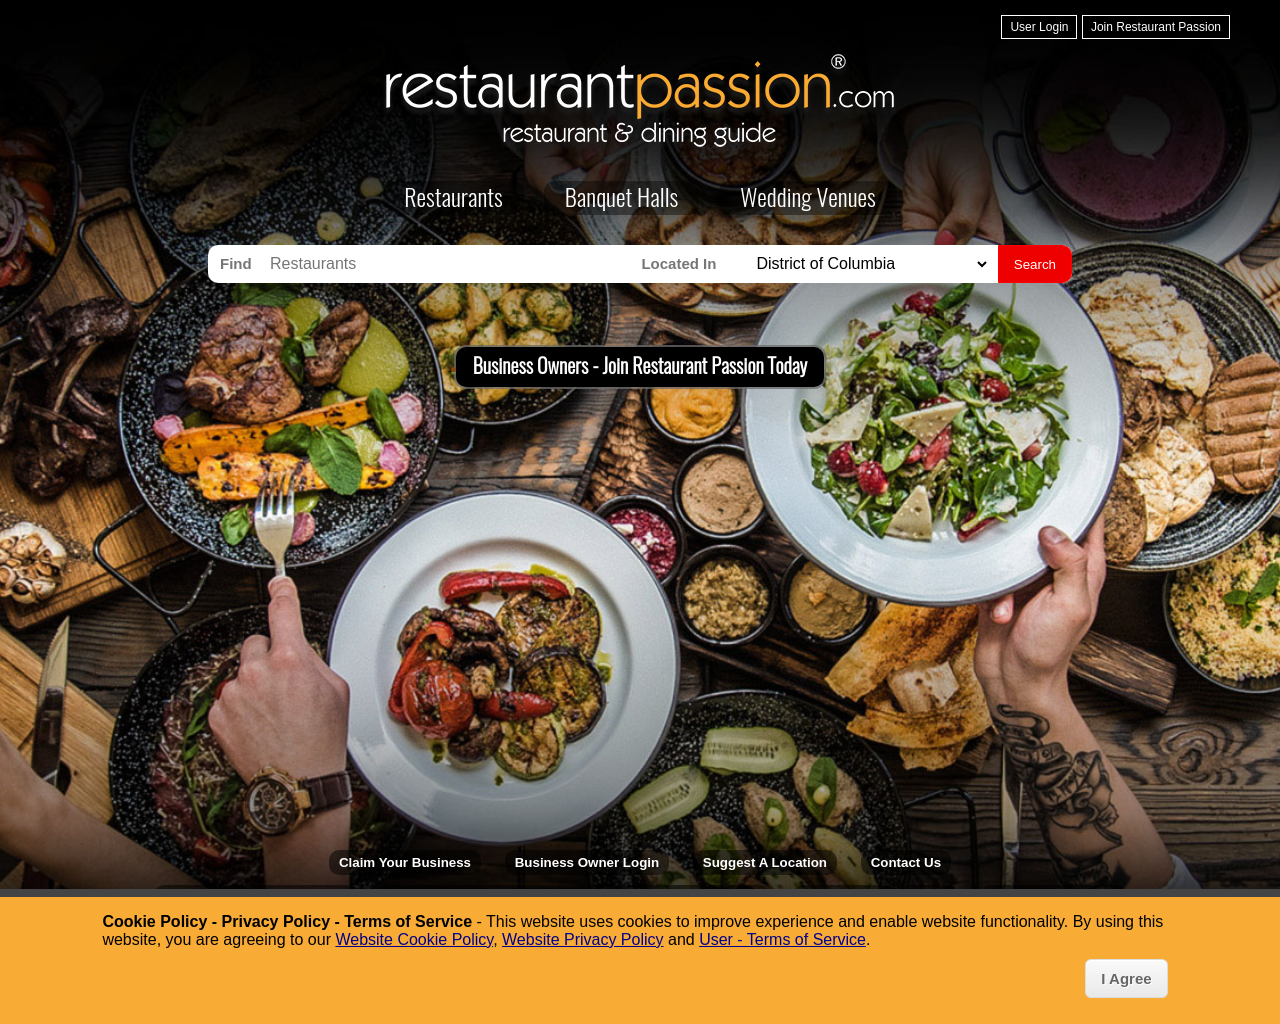 restaurantpassion.com